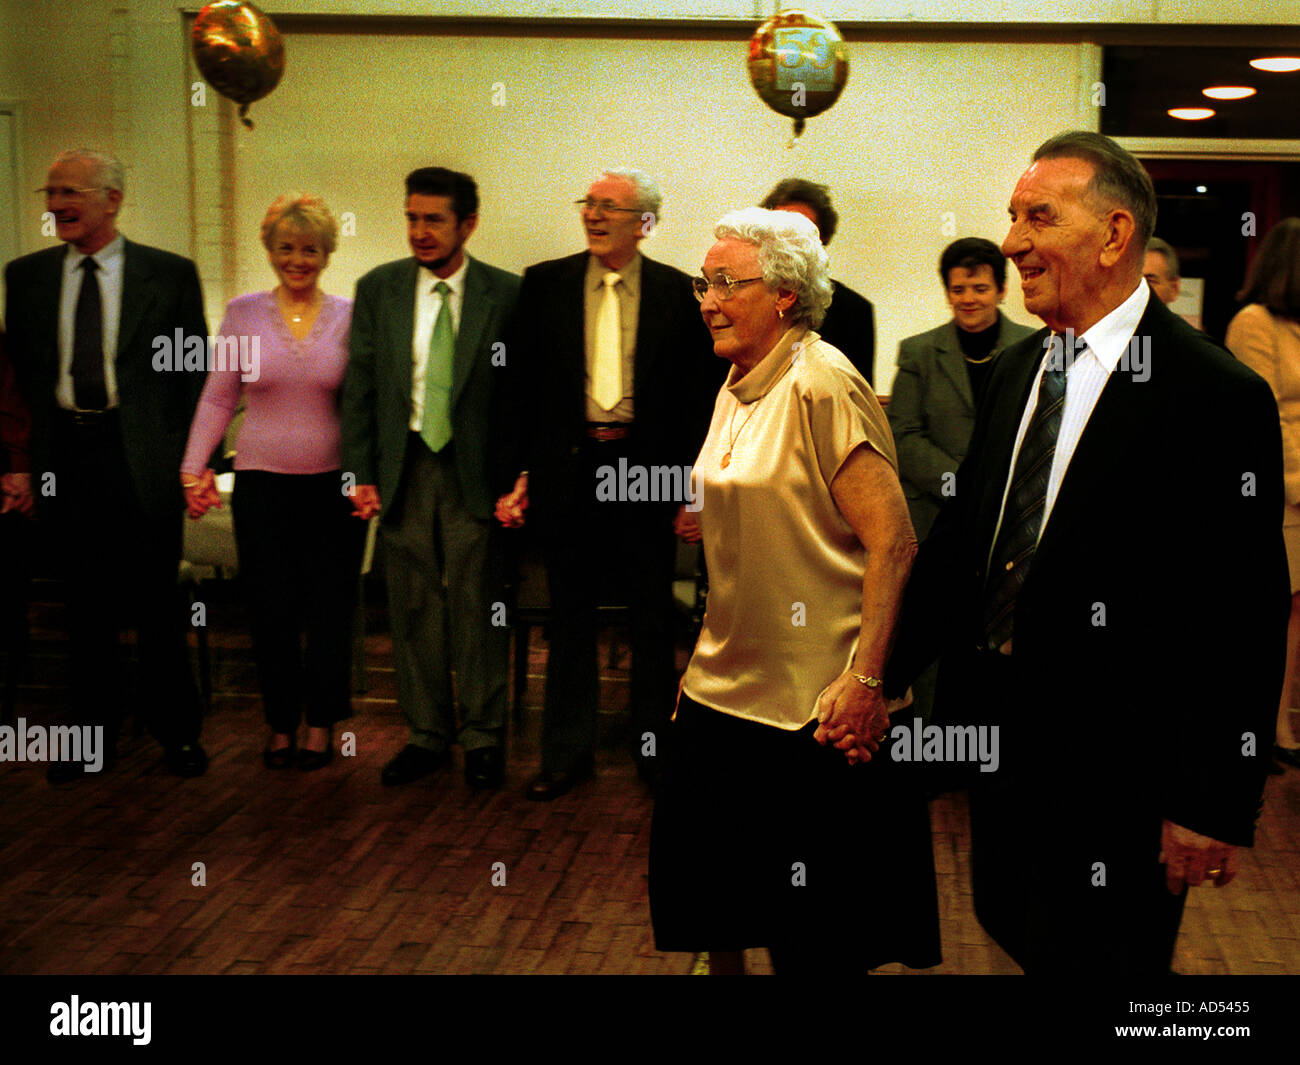 Bodas de Oro Viejo de edad de 50 años se casó con amigos de la familia SONRISAS alegría Foto de stock